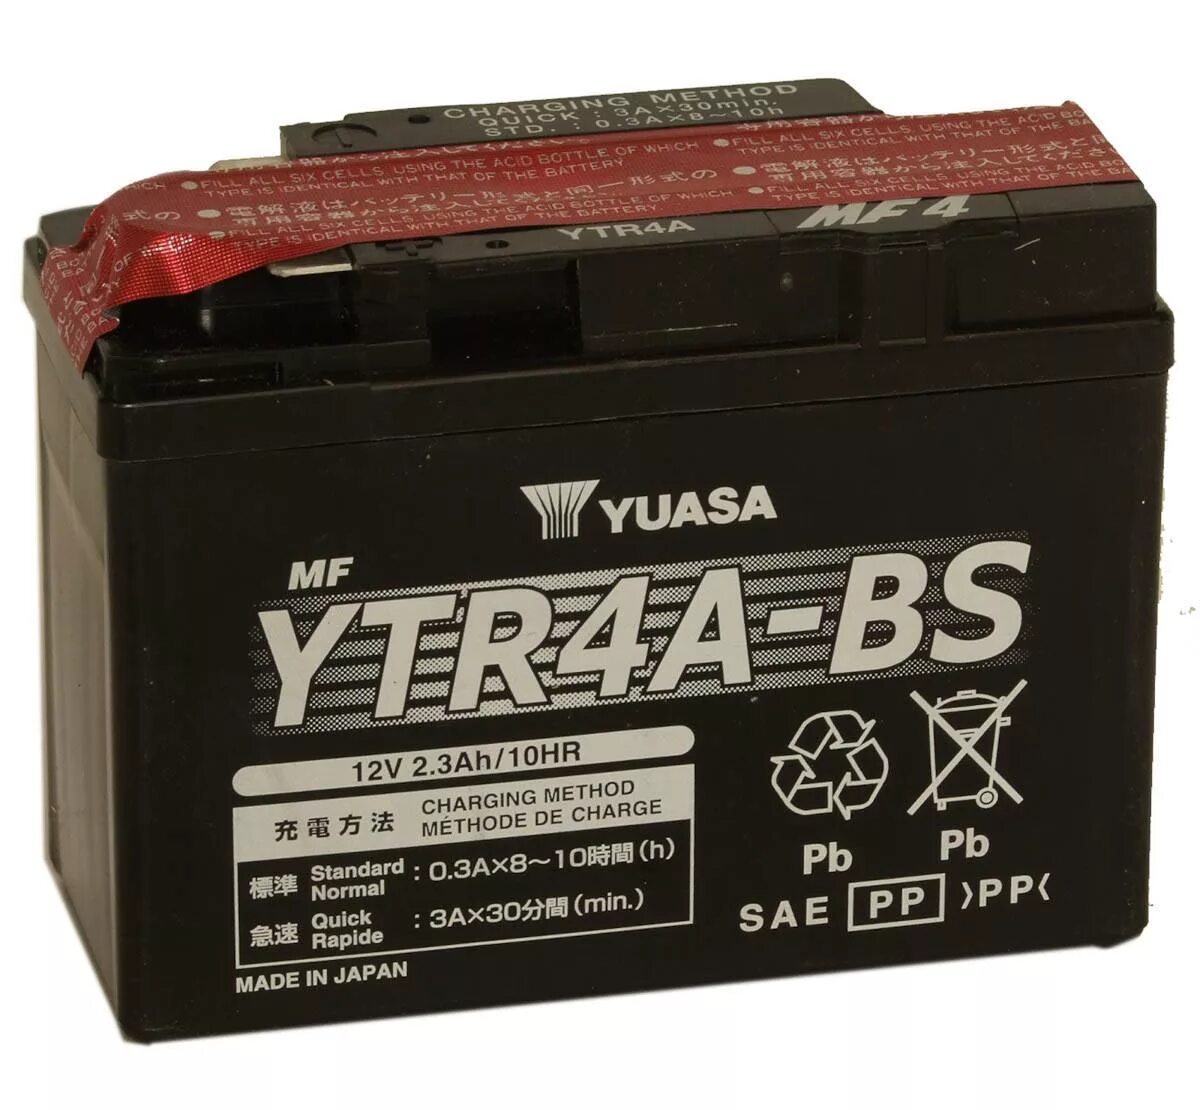 Yuasa аккумуляторы купить. Ytr4a BS (12v4ah/10hr). Ytr4a-BS (12v, 2.3Ah. АКБ мото 2,3ah outdo ytr4a-BS. Ytr4a-BS(MF).